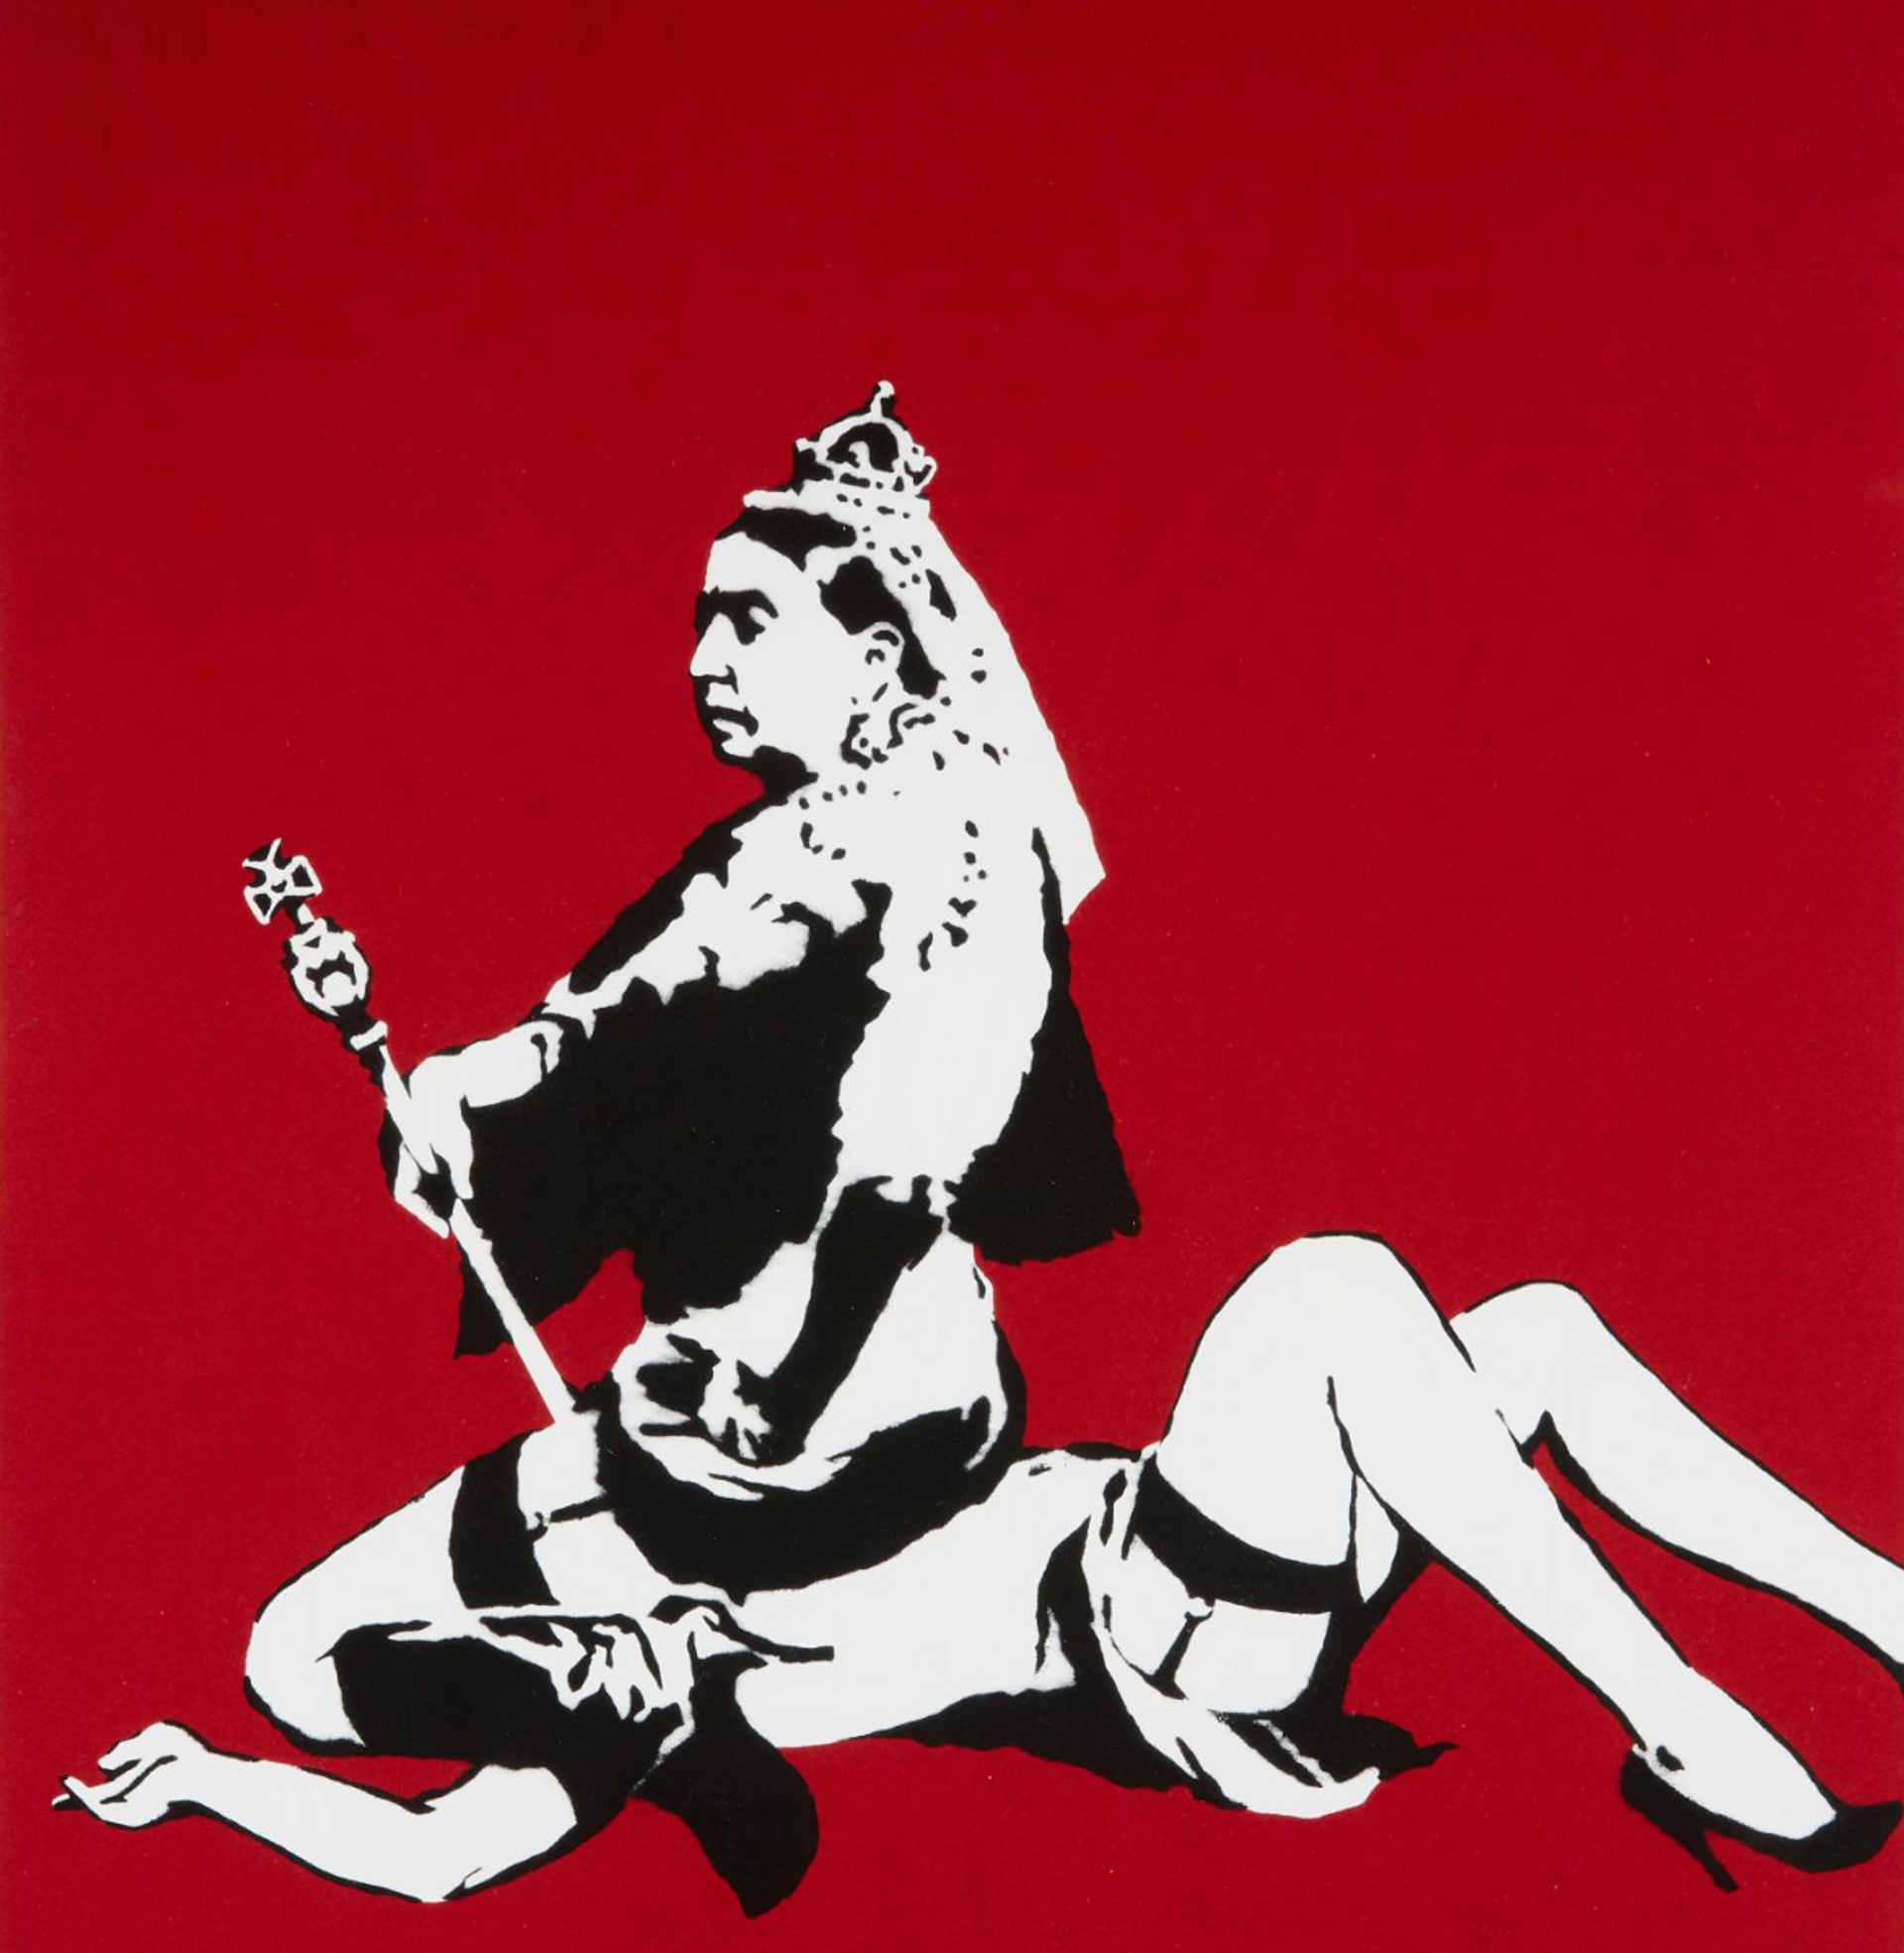 Queen Victoria by Banksy